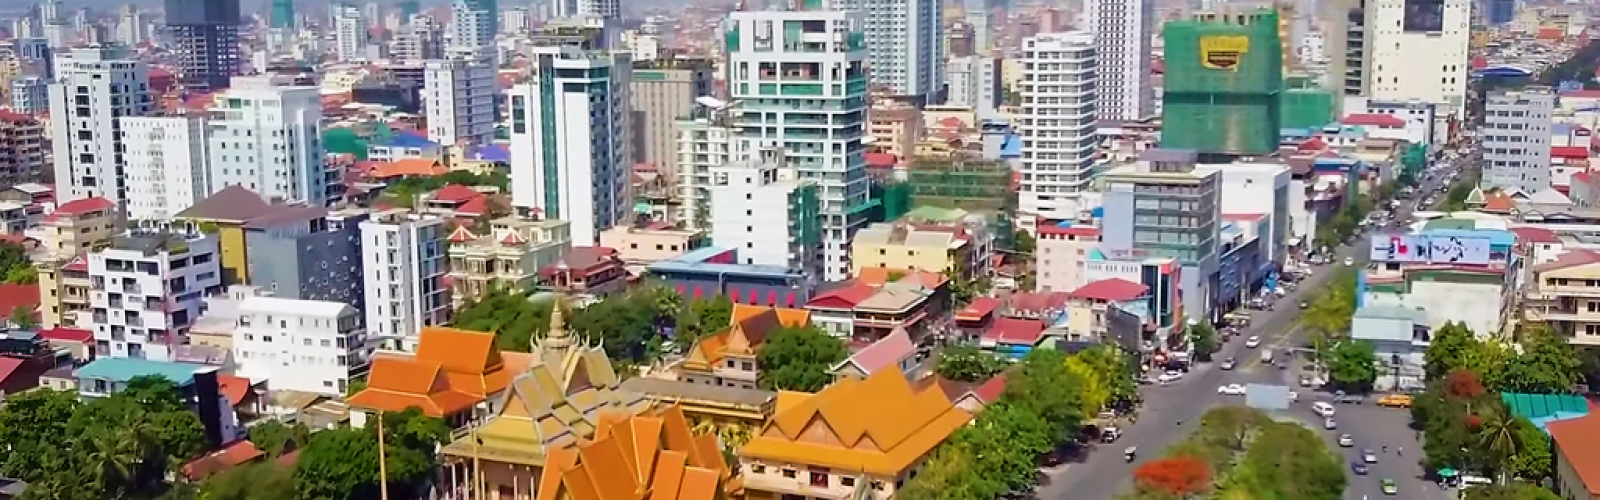 Камбоджа короткие туры по Пномпеню